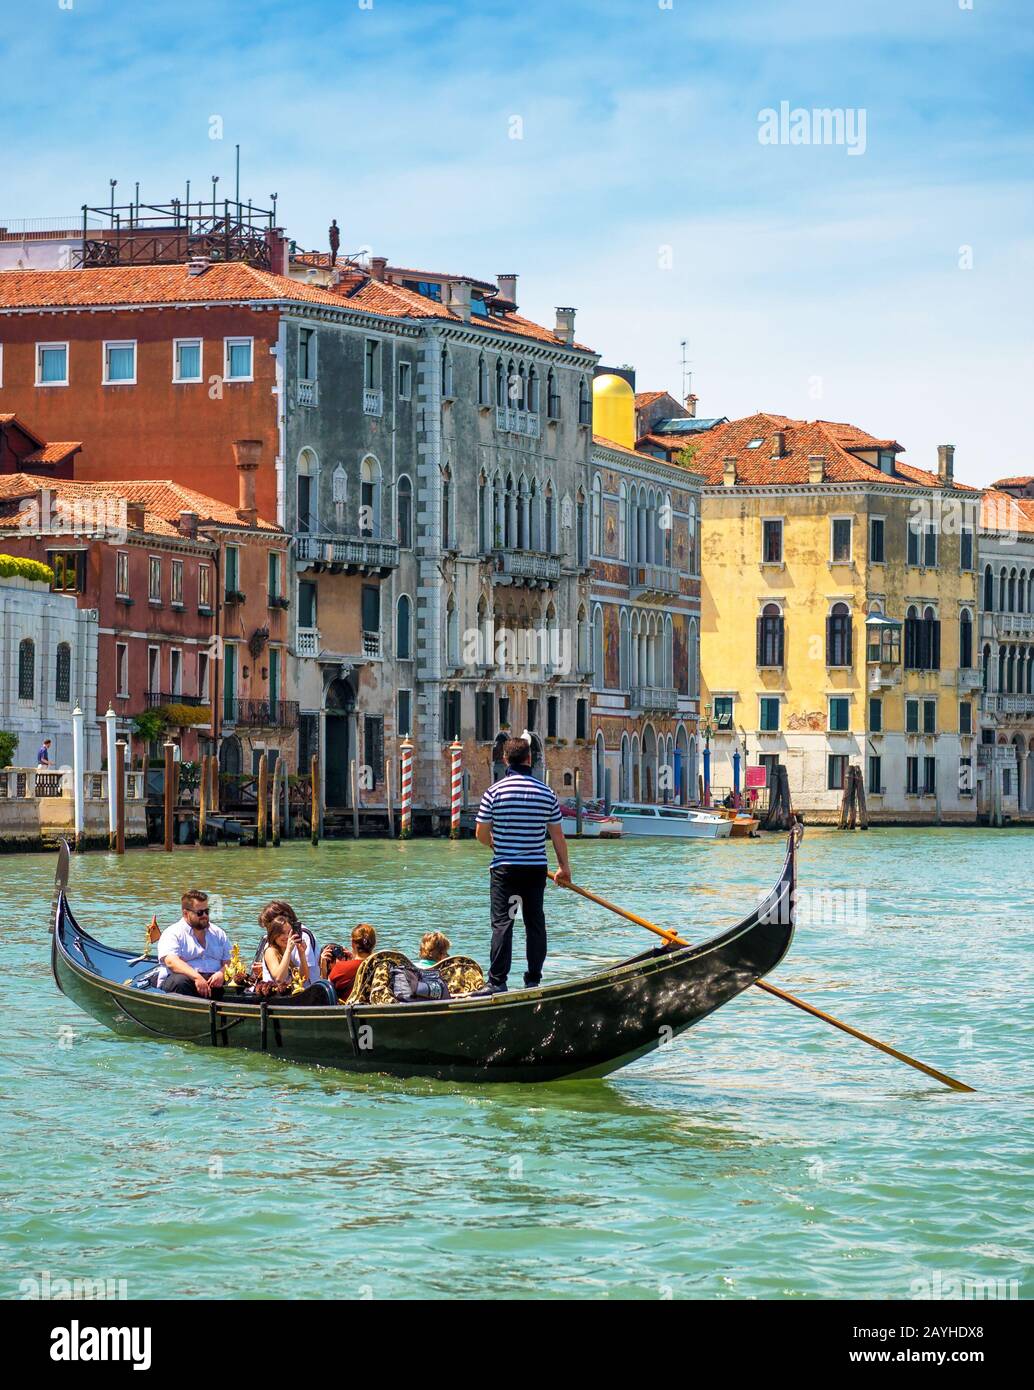 Venezia, Italia - 19 maggio 2017: Le gondole con i turisti navigano lungo il Canal Grande. La gondola è il mezzo di trasporto turistico più attraente di Venezia. 16 Foto Stock